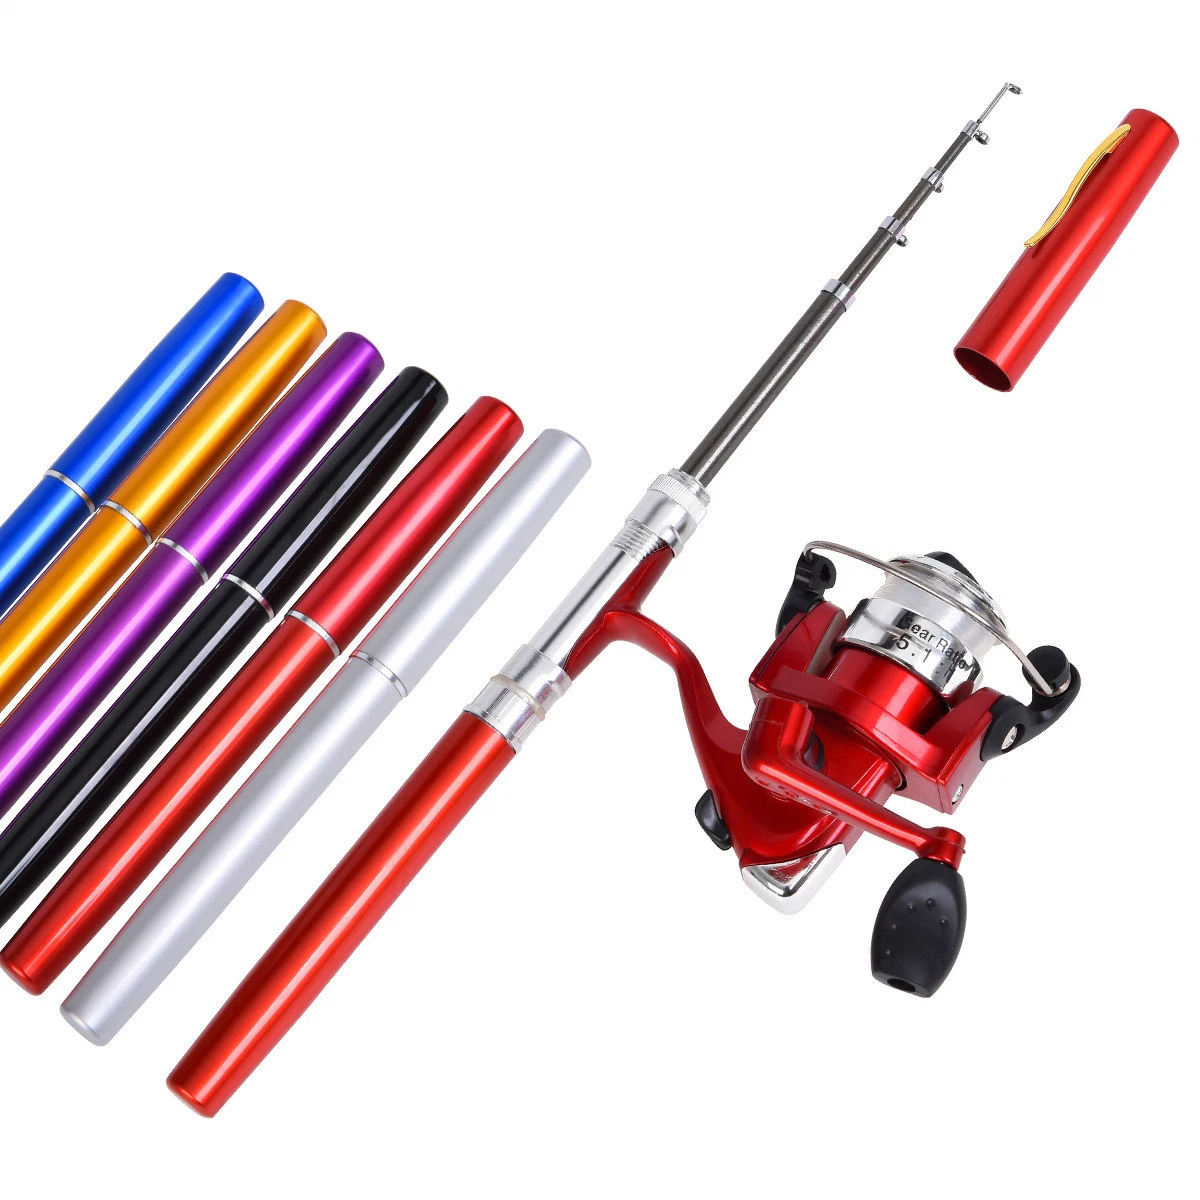 Pen Type Fishing Rod Spinning Wheel Two-Piece Set